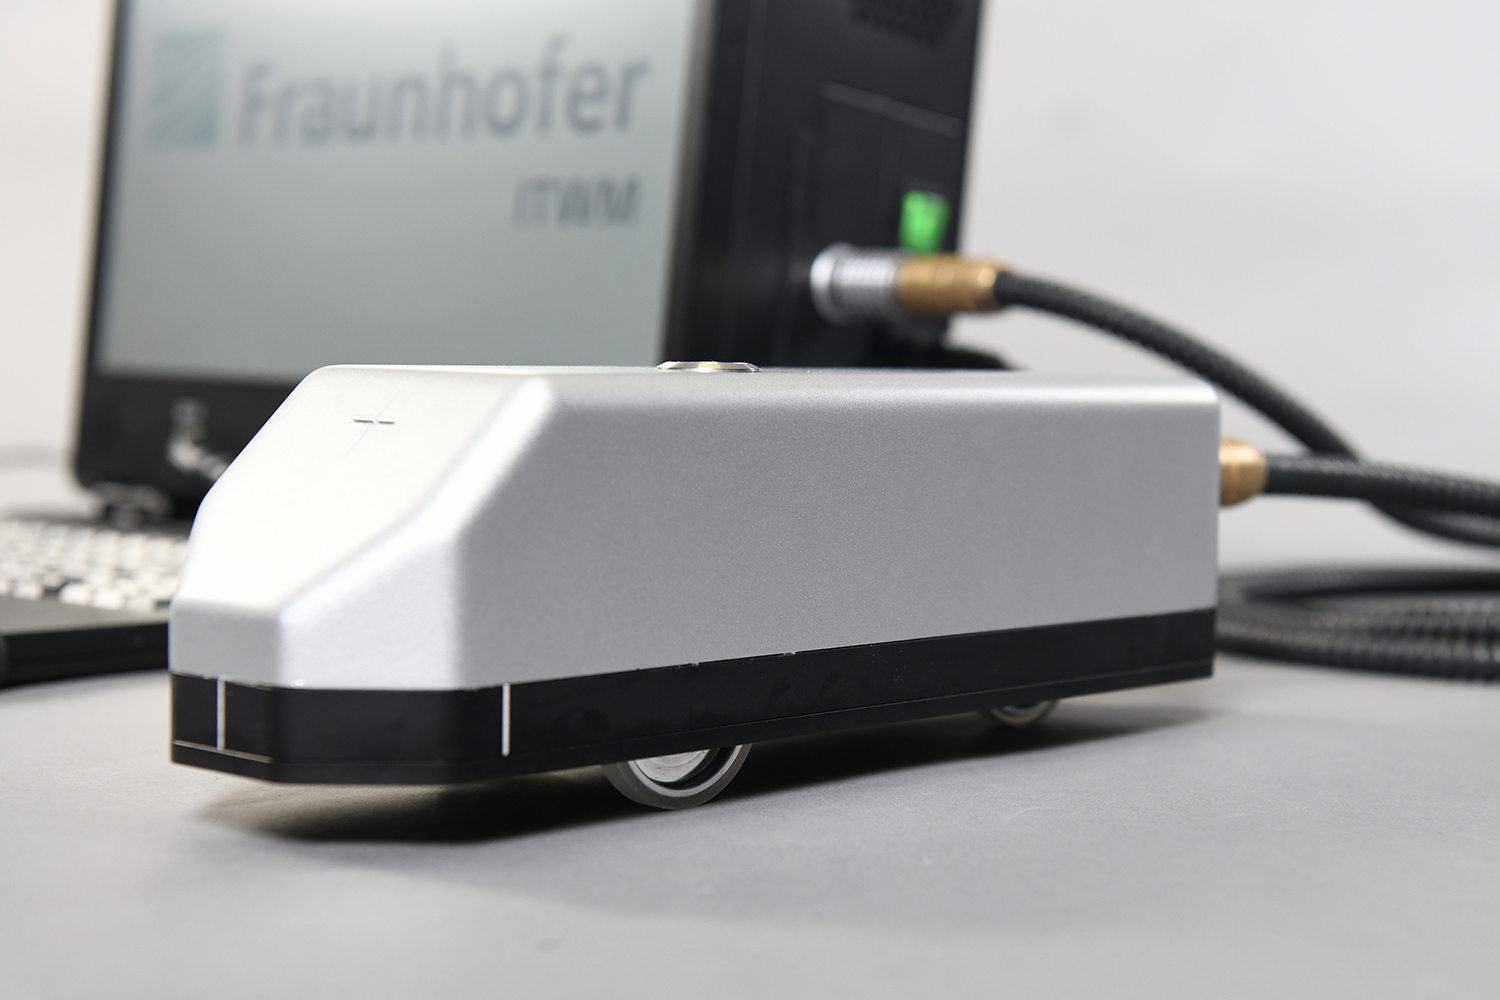 Mobiler Handscanner für die zerstörungsfreie Terahertz-Prüfung